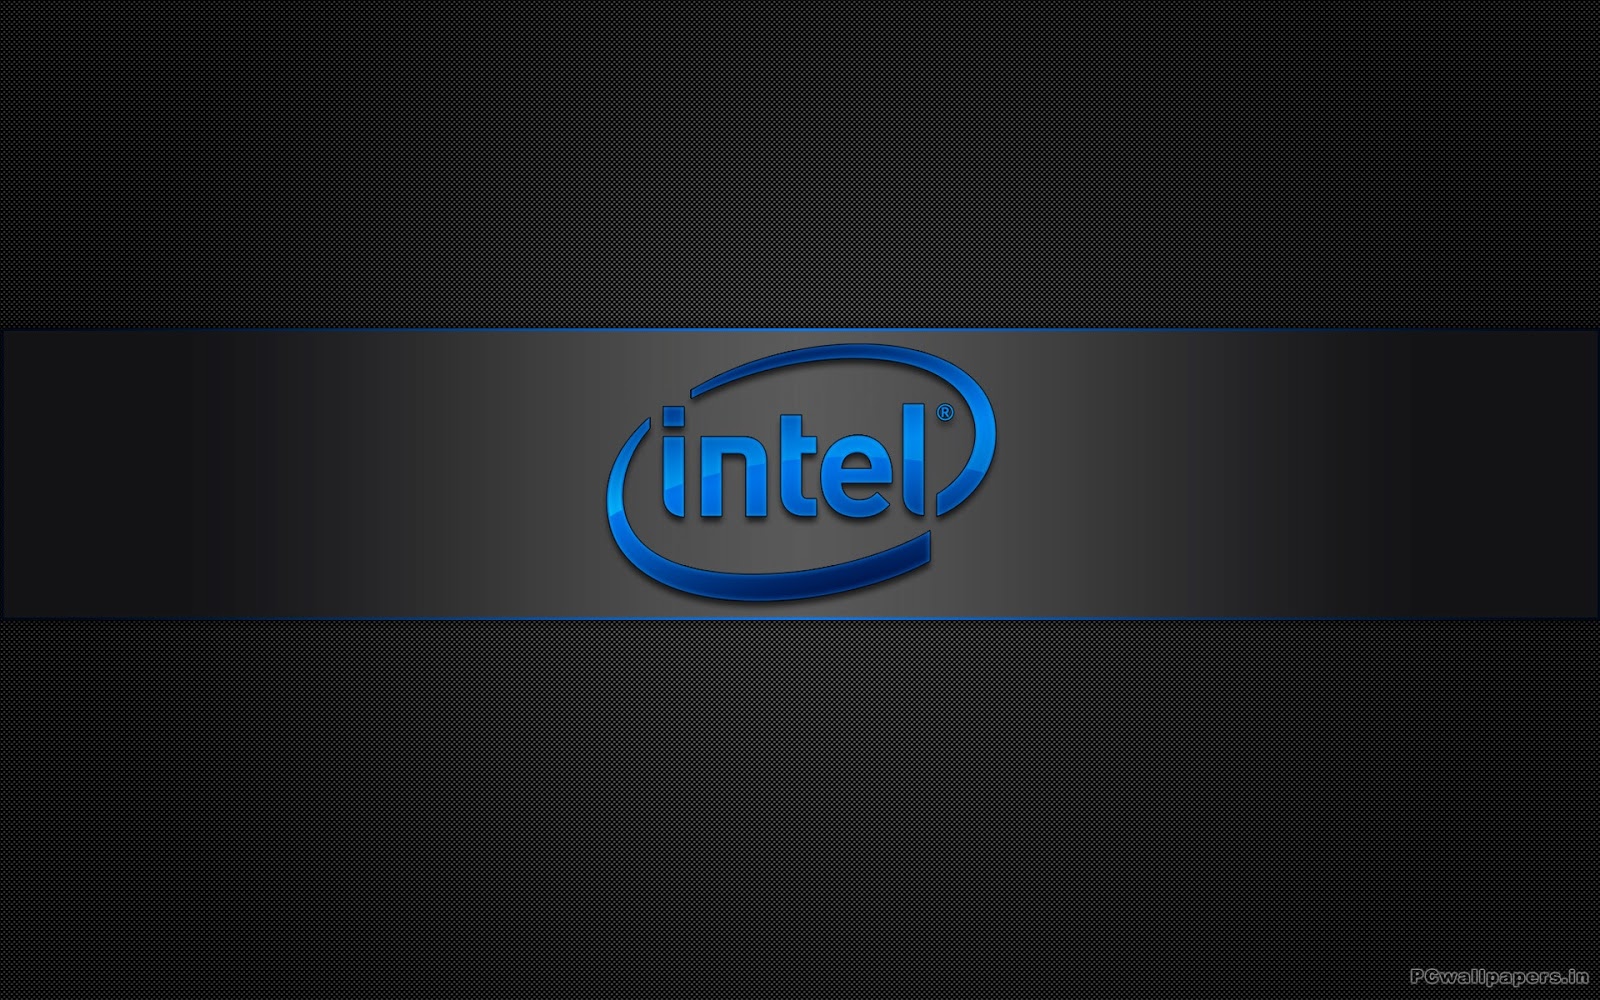 Pcwallpaperz Com Intel Logo Images, Photos, Reviews